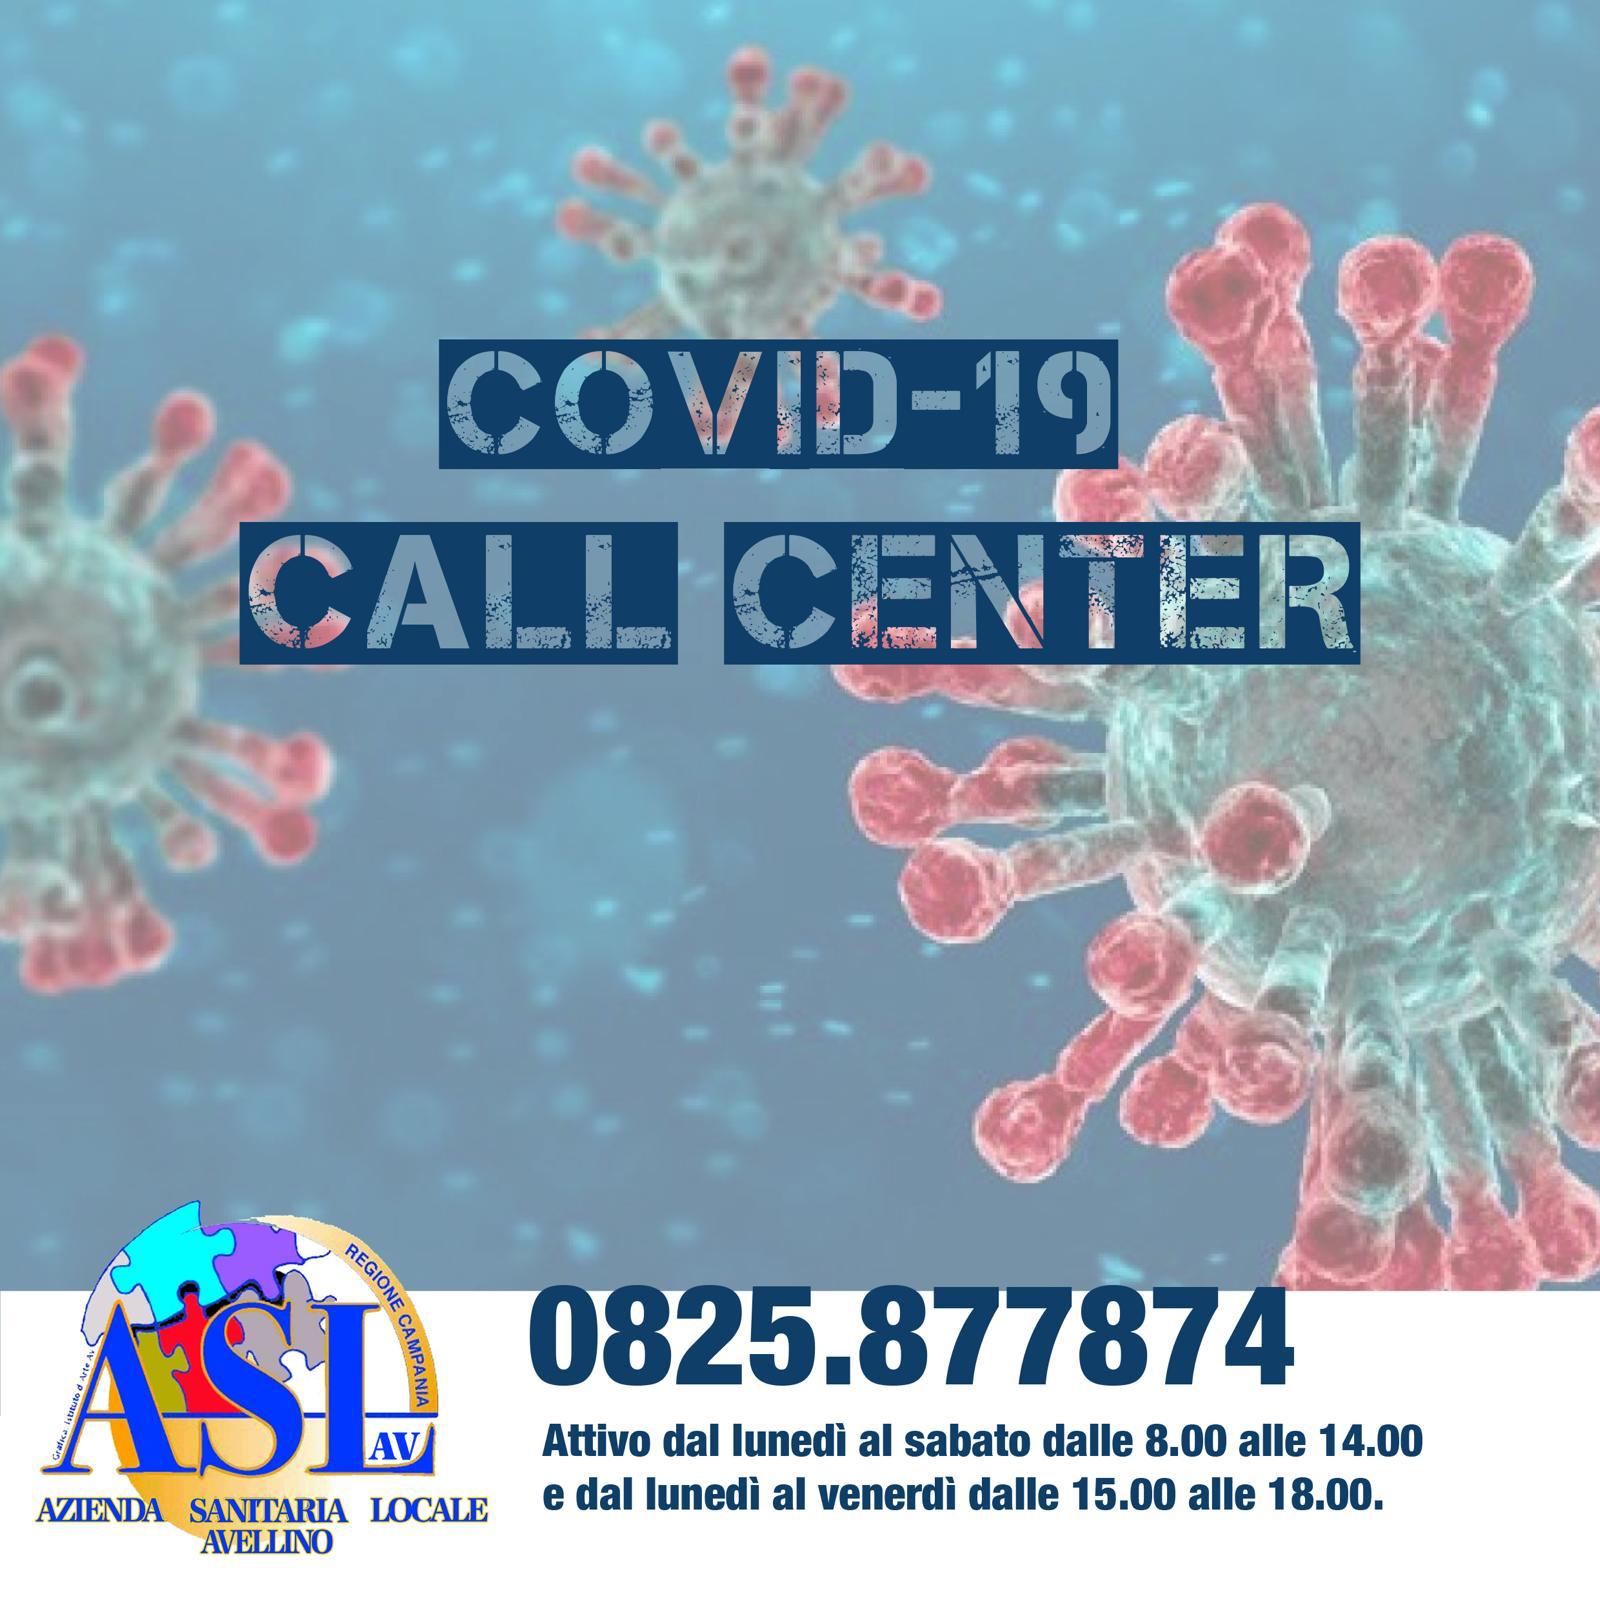 Call Center Covid-19, l’Asl di Avellino attiva un numero unico